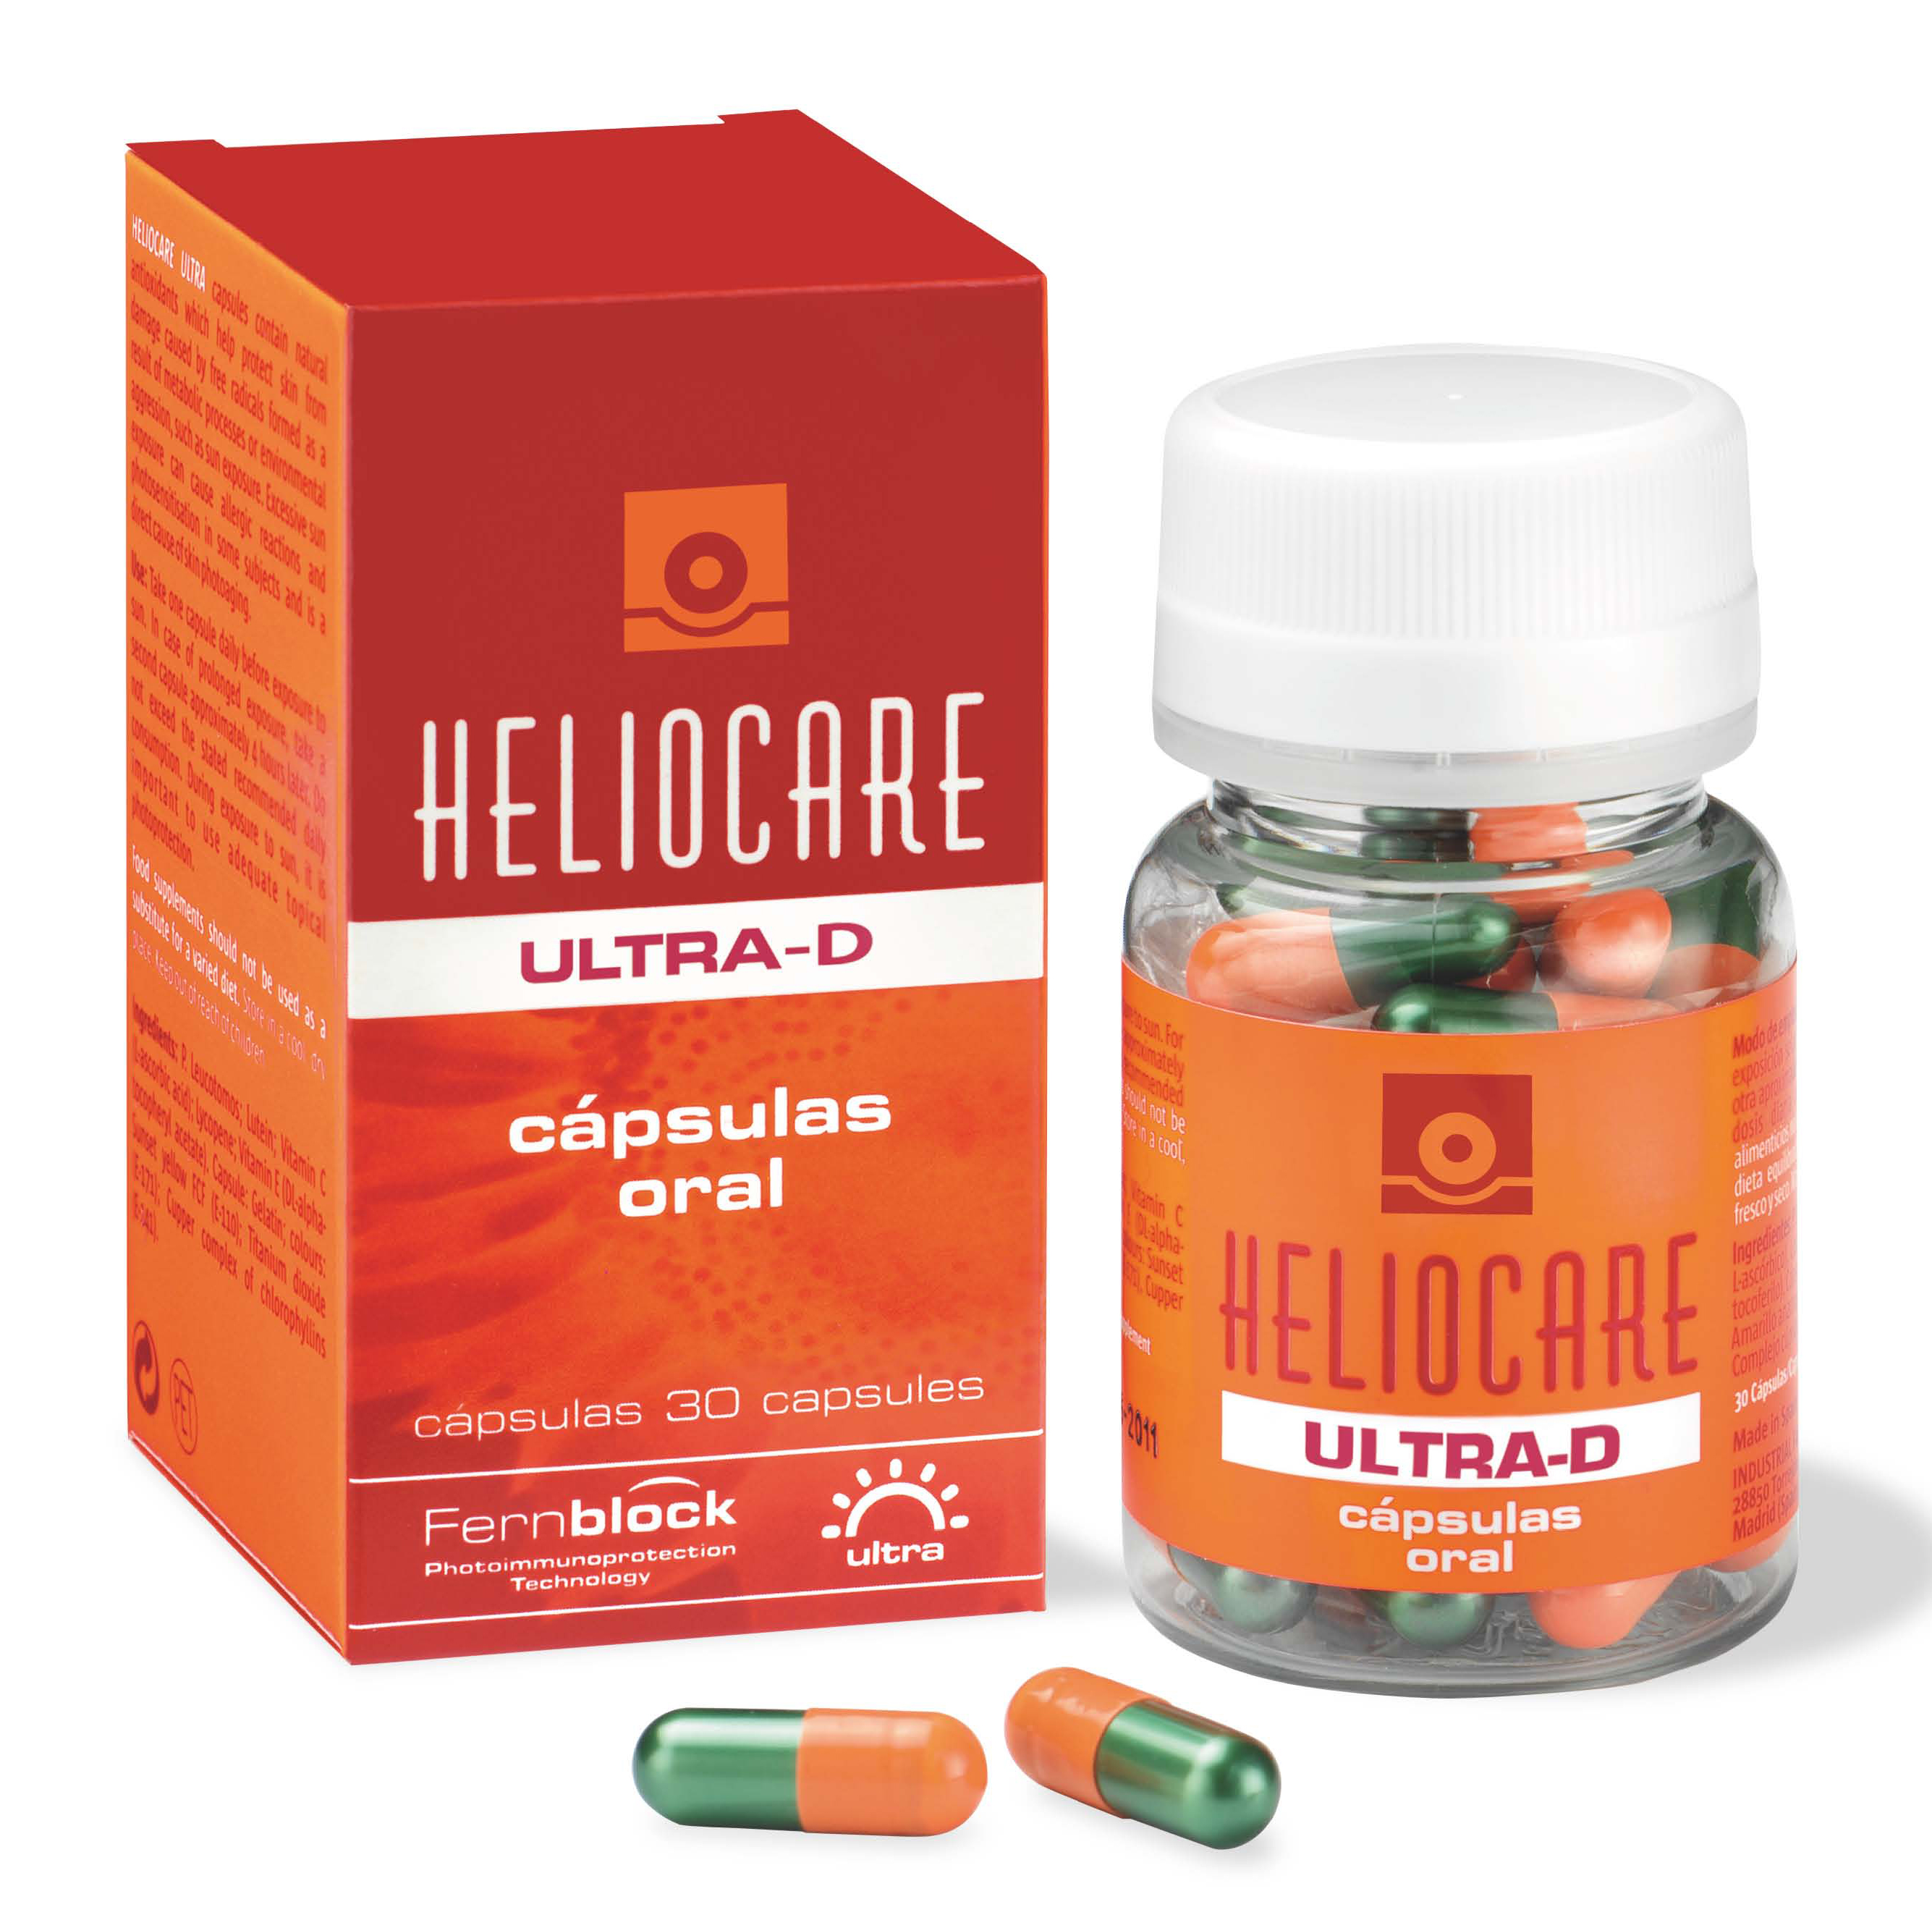 Heliocare Oral Ultra-D Bodegon